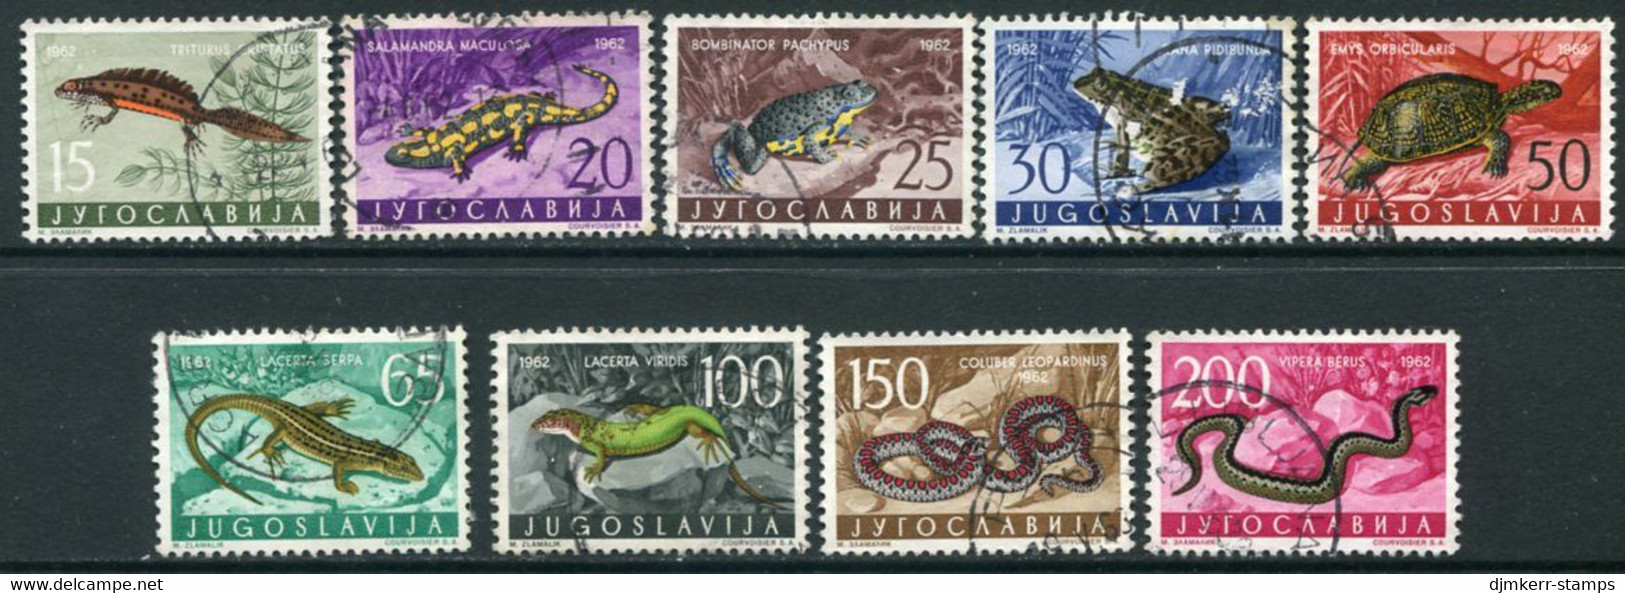 YUGOSLAVIA 1962 Amphibians And Reptiles  Used.  Michel 1007-15 - Oblitérés